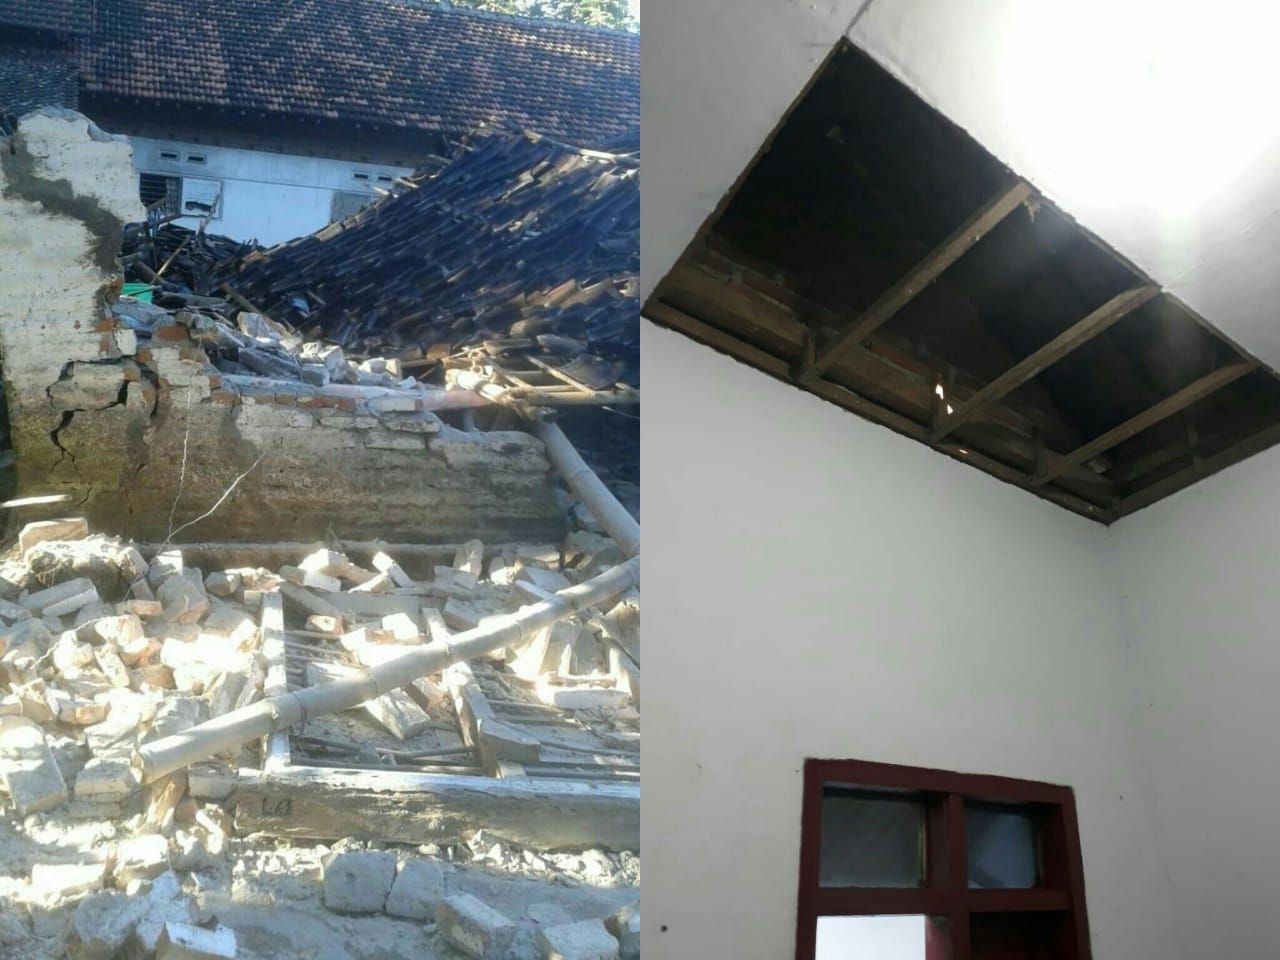 rumah warga yang rusak akibat gempa pagi ini/@DaryonoBMKG